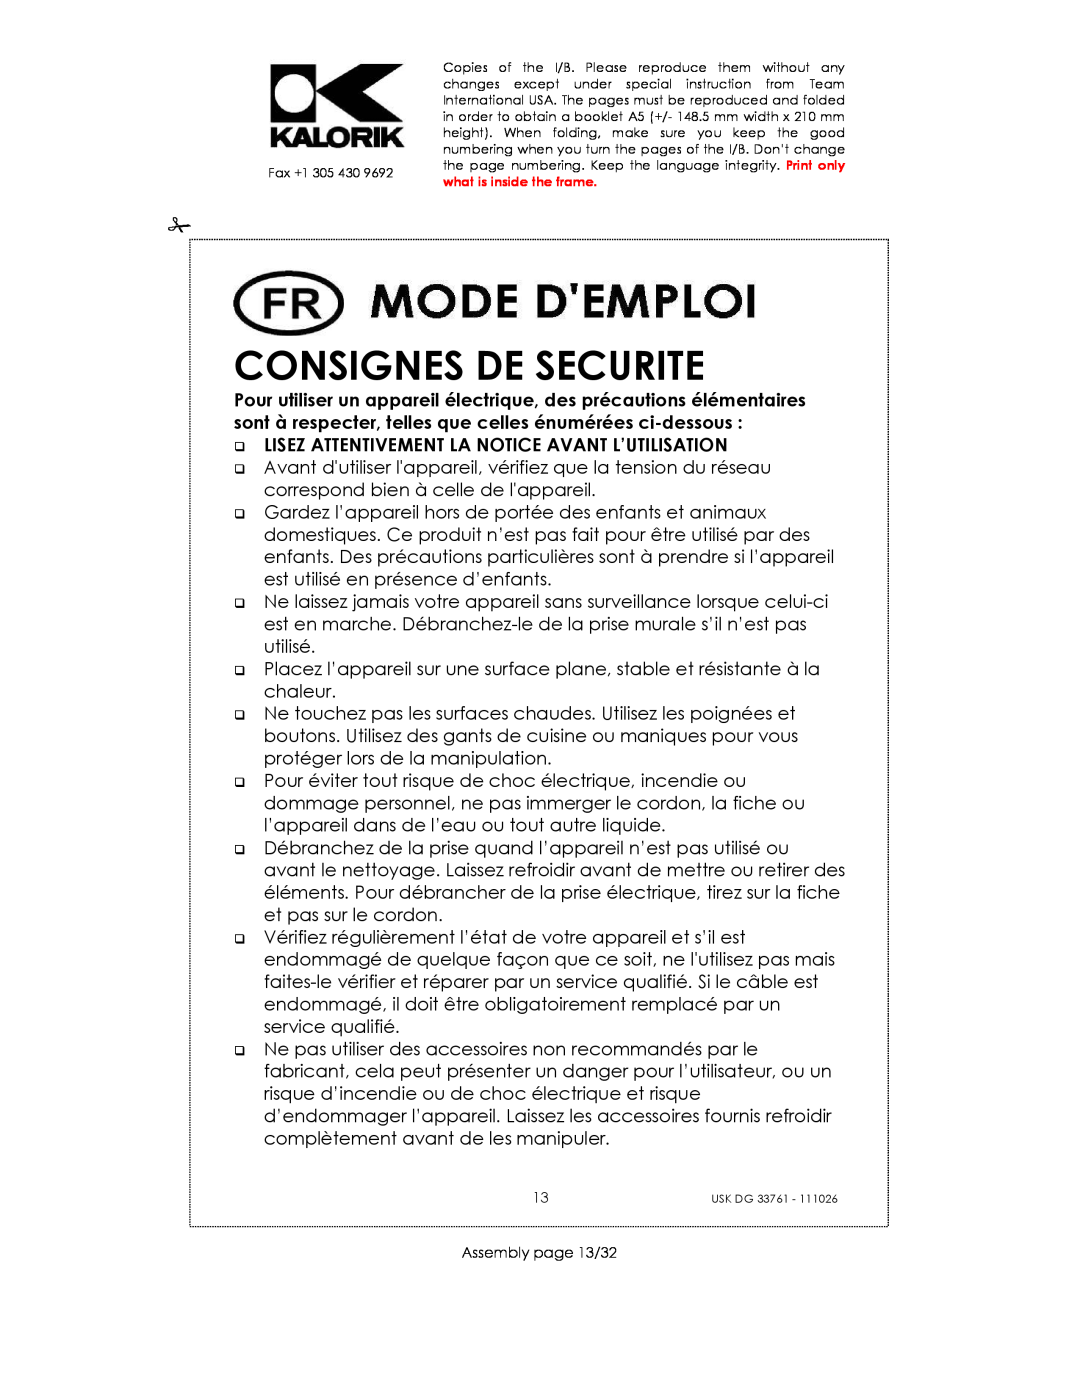 Kalorik USK DG 33761 manual Consignes De Securite, Pour Votre Sécurité, Lisez Attentivement La Notice Avant L’Utilisation 